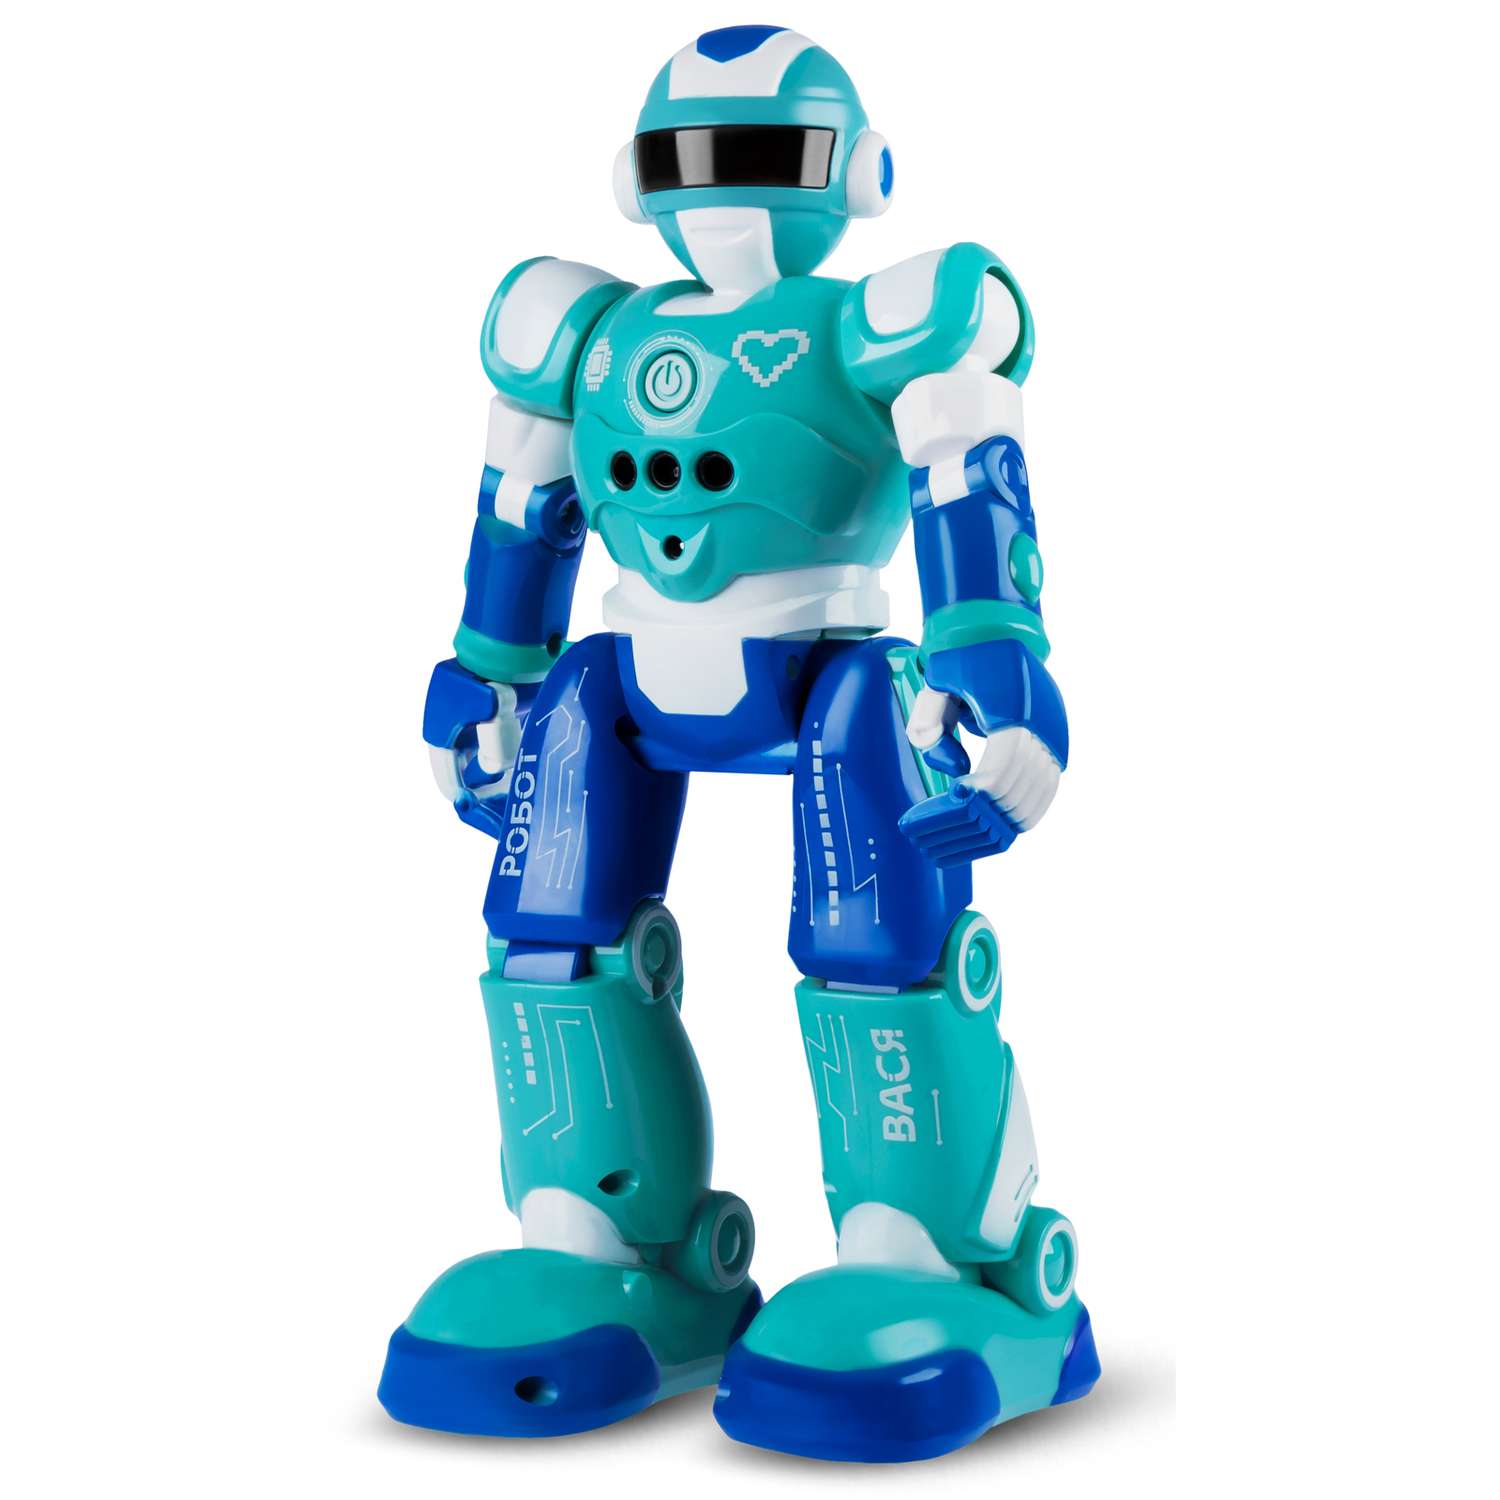 Игрушка Smart Baby Интерактивный робот Вася Реагирует на жесты Радиоуправляемый Программирование - фото 17